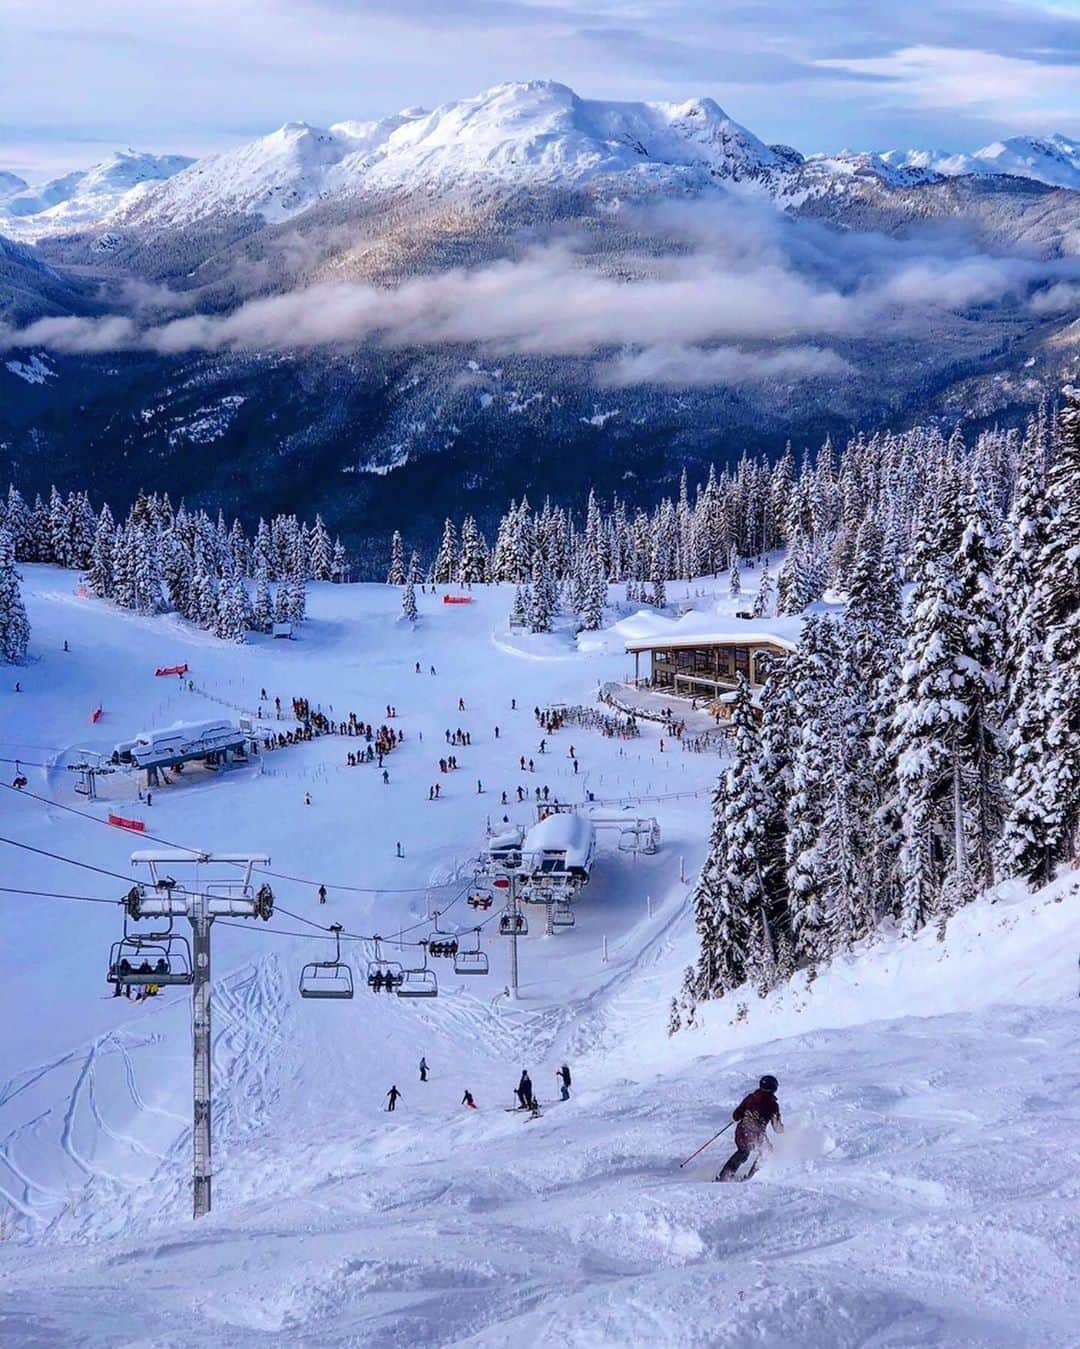 バンクーバー観光局- Tourism Vancouverのインスタグラム：「バンクーバーから車で約2時間のところにある冬のリゾート地といえば、ウィスラー。2010年の冬季オリンピックの会場にもなった場所で、ウィンターアクティビティーをしたい方には最適です。⁠ 📷 : @thegirlwiththebuffalotattoo(Instagram)⁠ .⁠ .⁠ .⁠ #カナダ #バンクーバー #Vancouver #旅 #旅行 #女子旅 #旅好き #一人旅 #海外旅行 #トラベル #旅女子 #旅行好きな人と繋がりたい #旅好きな人と繋がりたい #旅行好き #旅行大好き #旅行行きたい #旅に出たい #海外 #旅の記録 #旅の思い出 #旅行記 #旅したくなるフォト #マイトリップ #マイトリ #retrip_global #ゲレンデ #ダレカニミセタイケシキ #スキー #雪山 #ウィスラー」